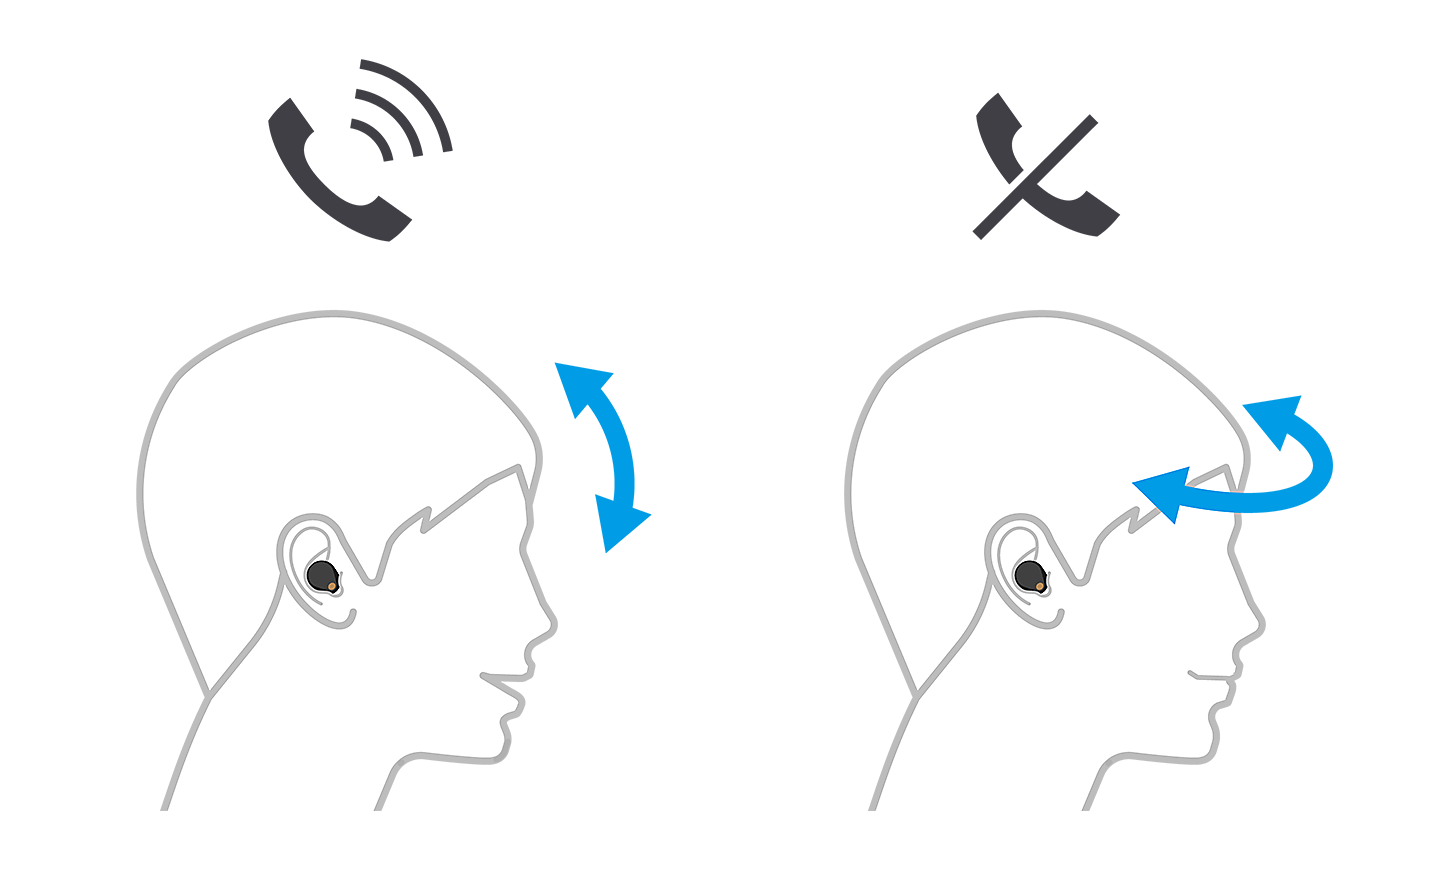 Két fej képe, a bal oldali hívást fogad a felfelé és lefelé mutató nyilakkal, a jobb oldali pedig balról jobbra mutató nyilakkal elutasítja a hívást